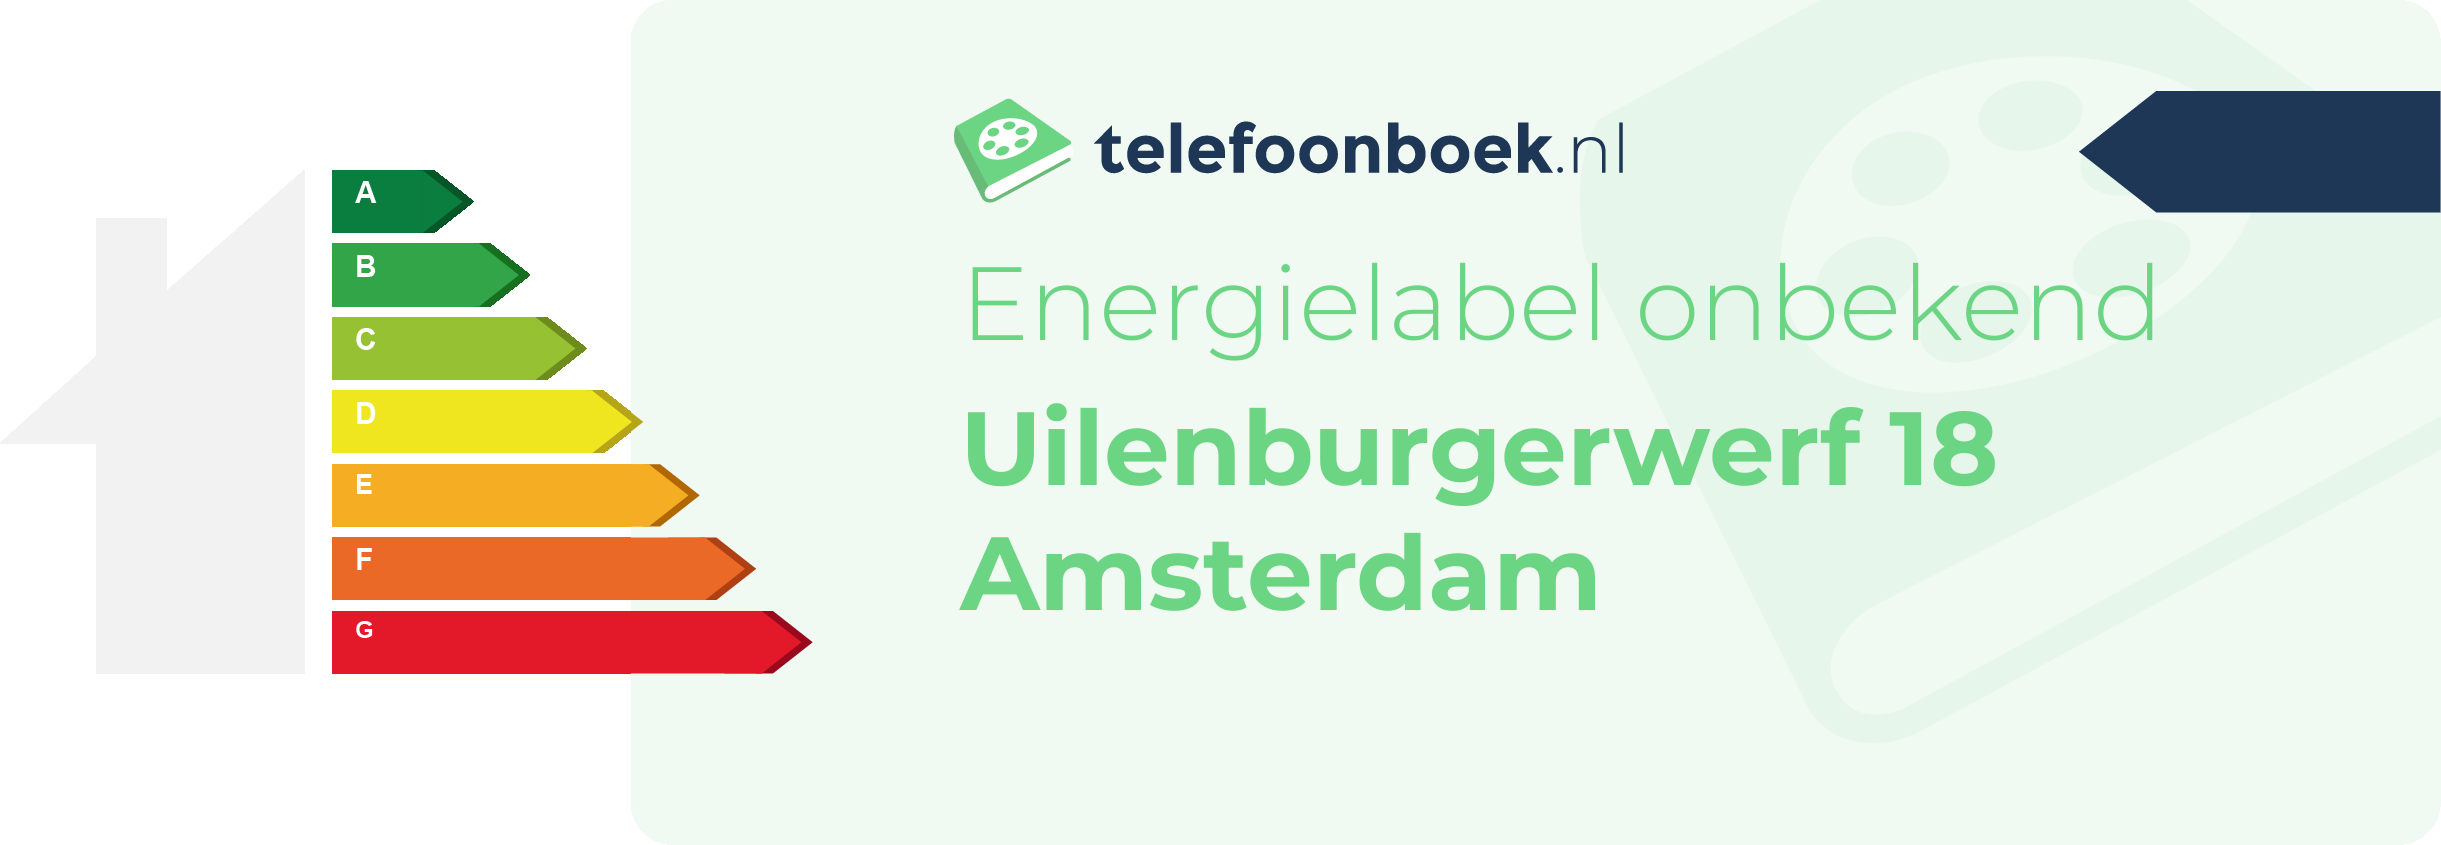 Energielabel Uilenburgerwerf 18 Amsterdam